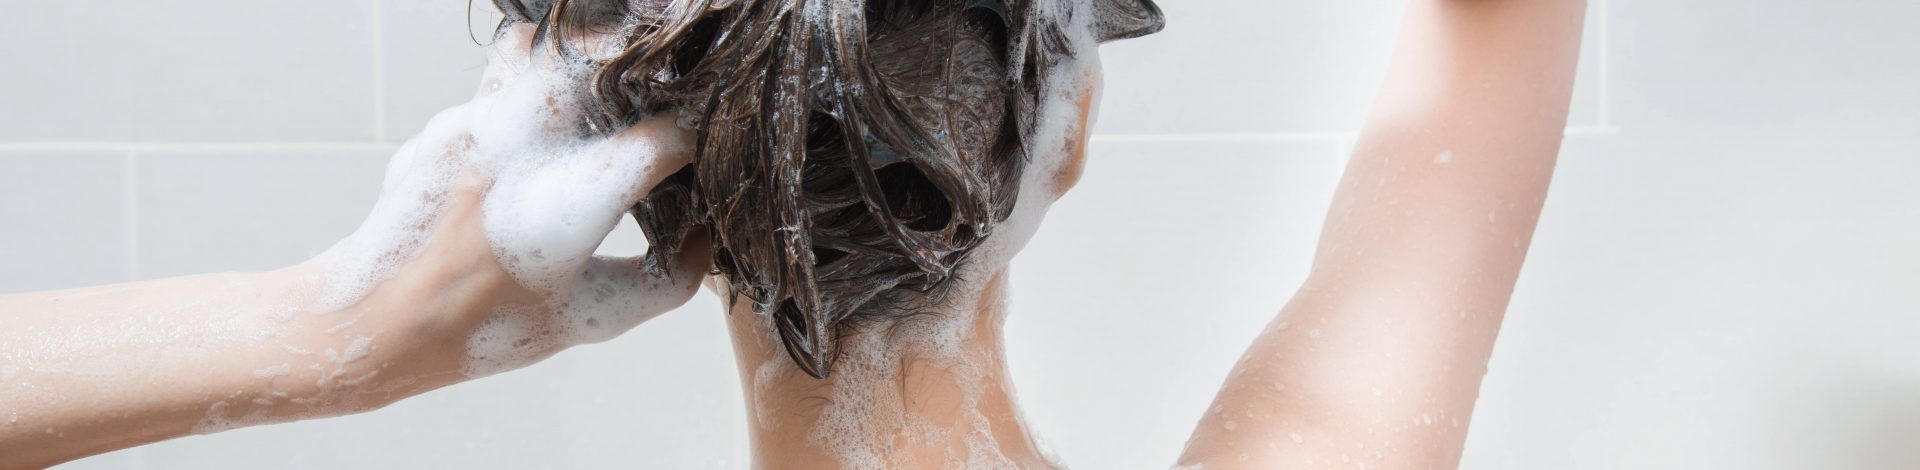 mor evne krokodille Neccin Shampoo - Virker den mod skæl? Læs vorest test af Neccin